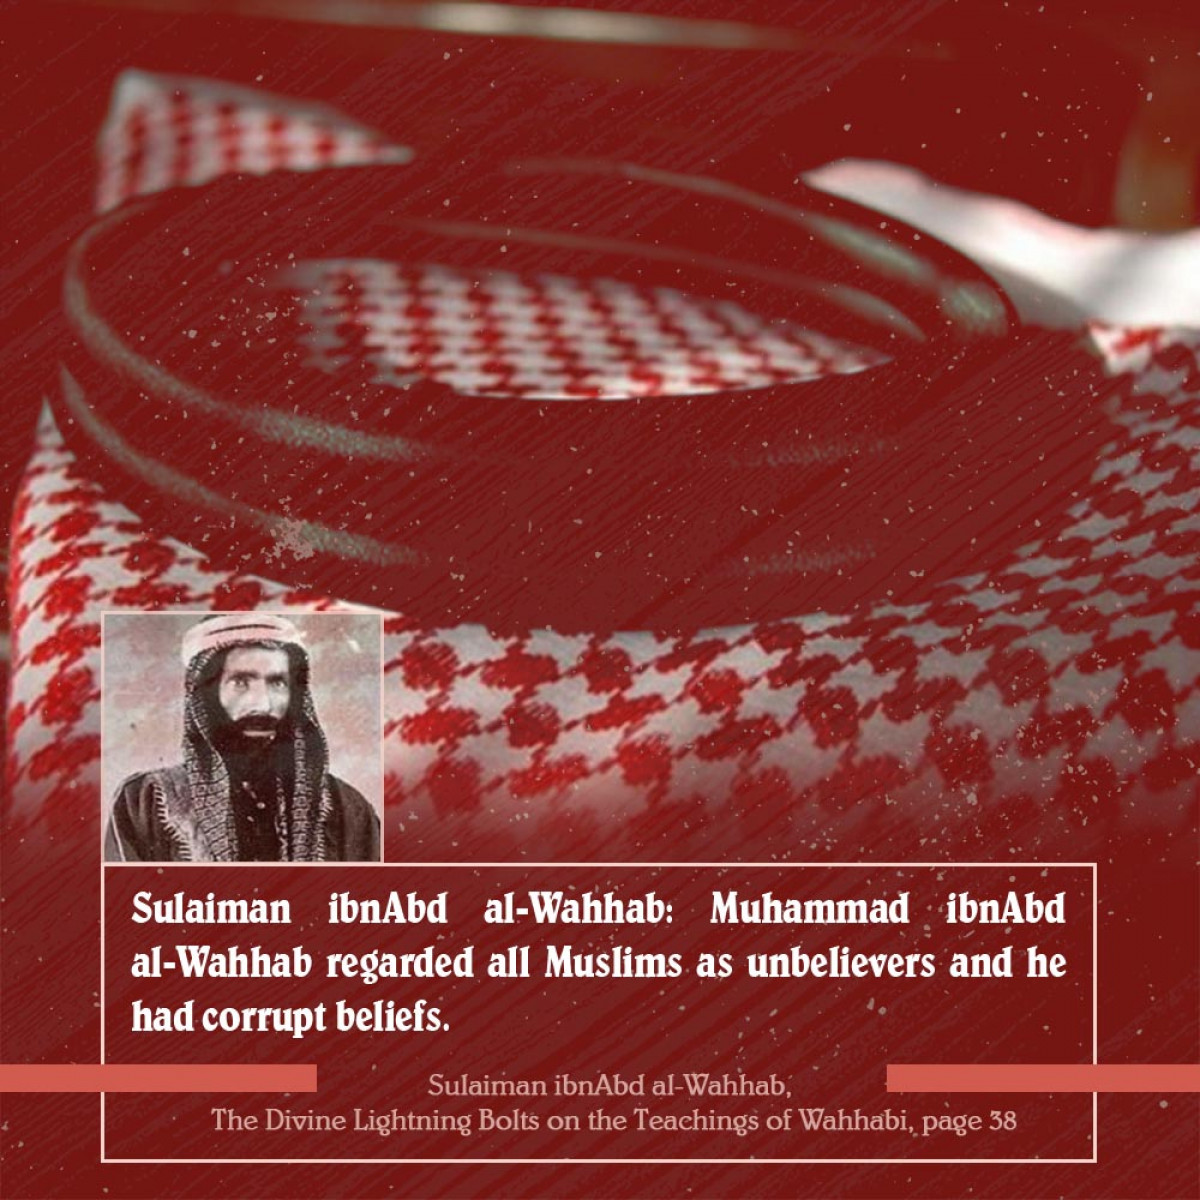 Sulaiman ibnAbd al-Wahhab: Muhammad ibnAbd al-Wahhab regarded all Muslims as unbelievers